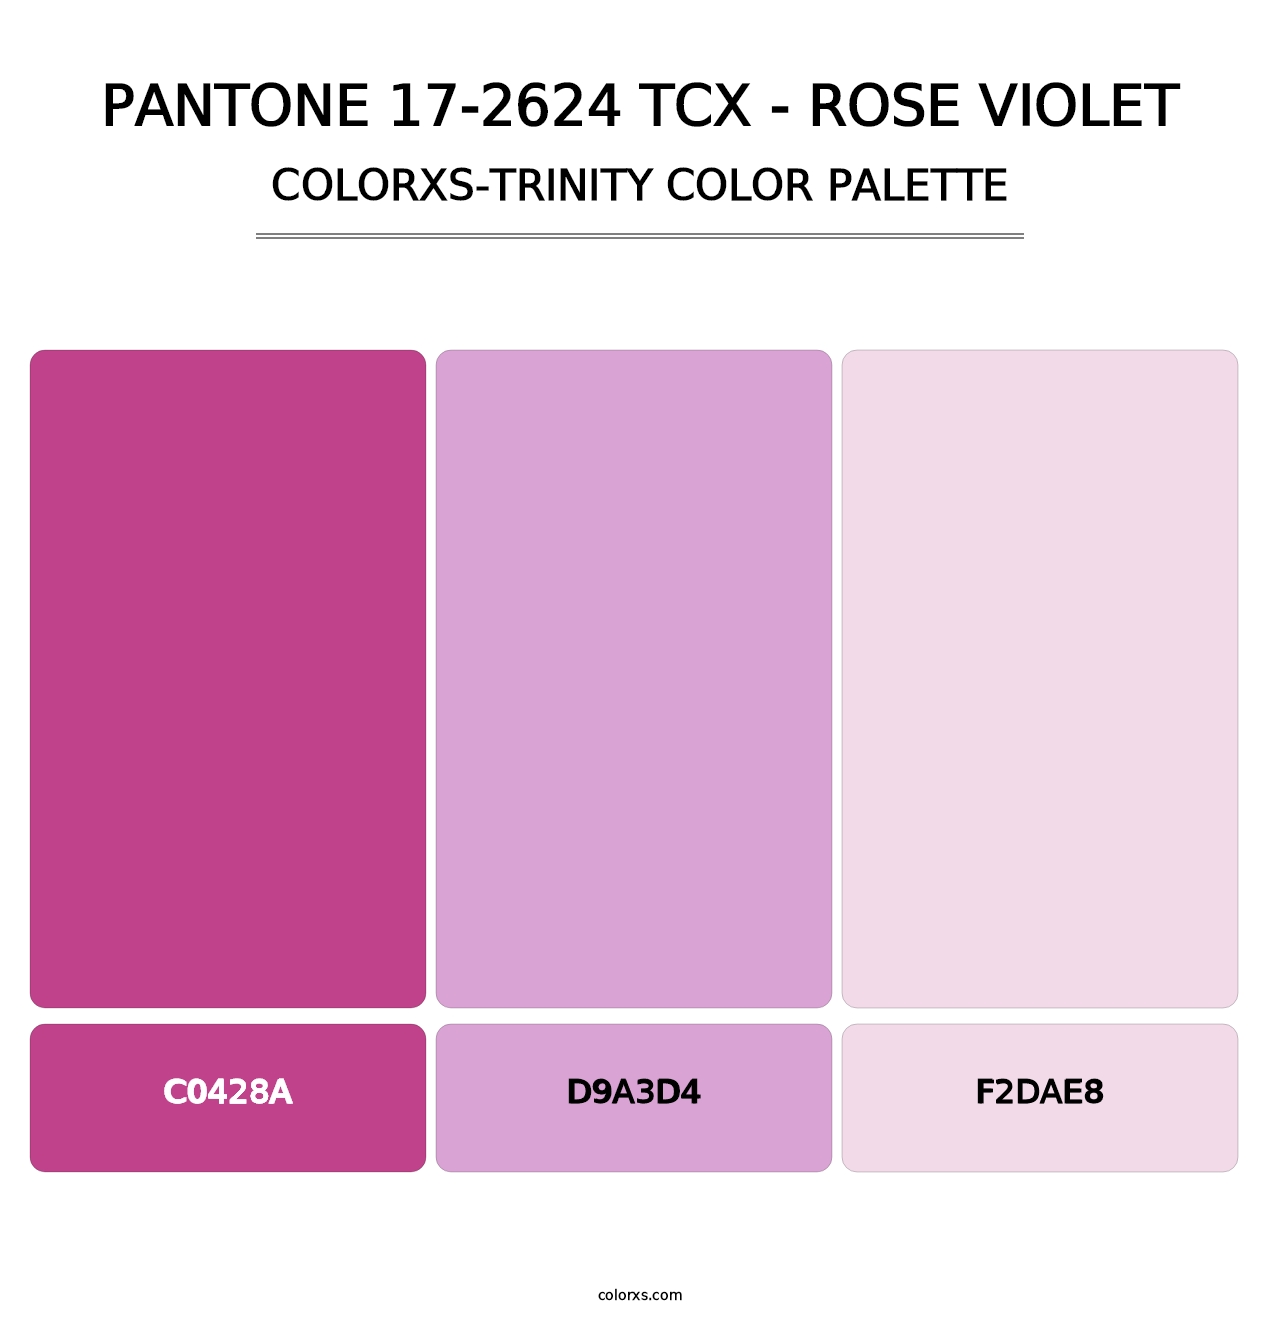 PANTONE 17-2624 TCX - Rose Violet - Colorxs Trinity Palette